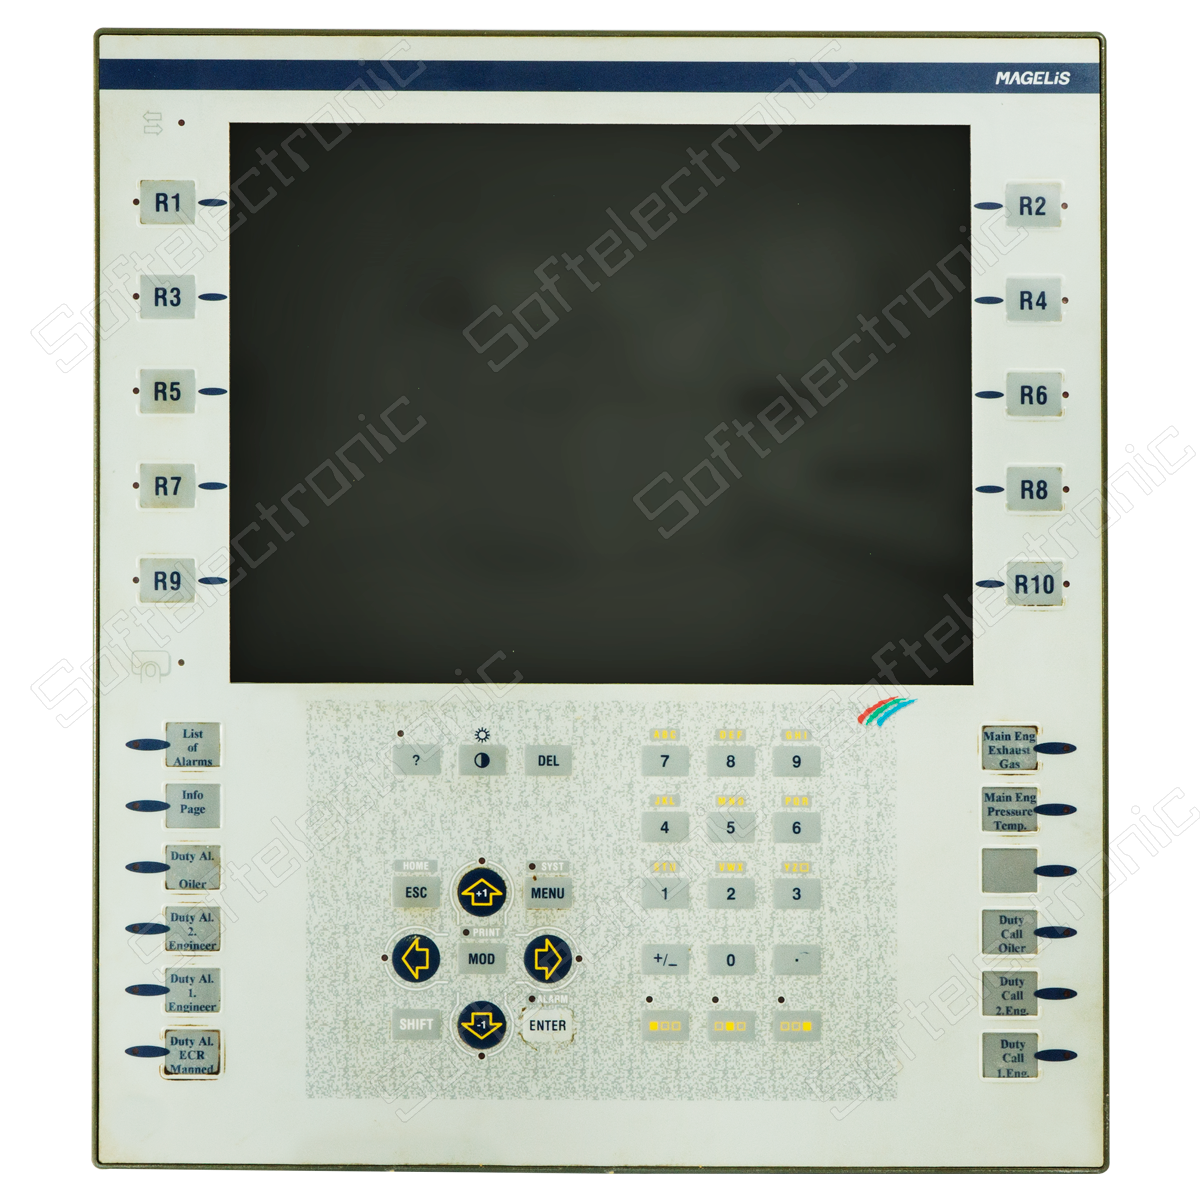 Сигнализационная система  Modicon 984-A120 PLC